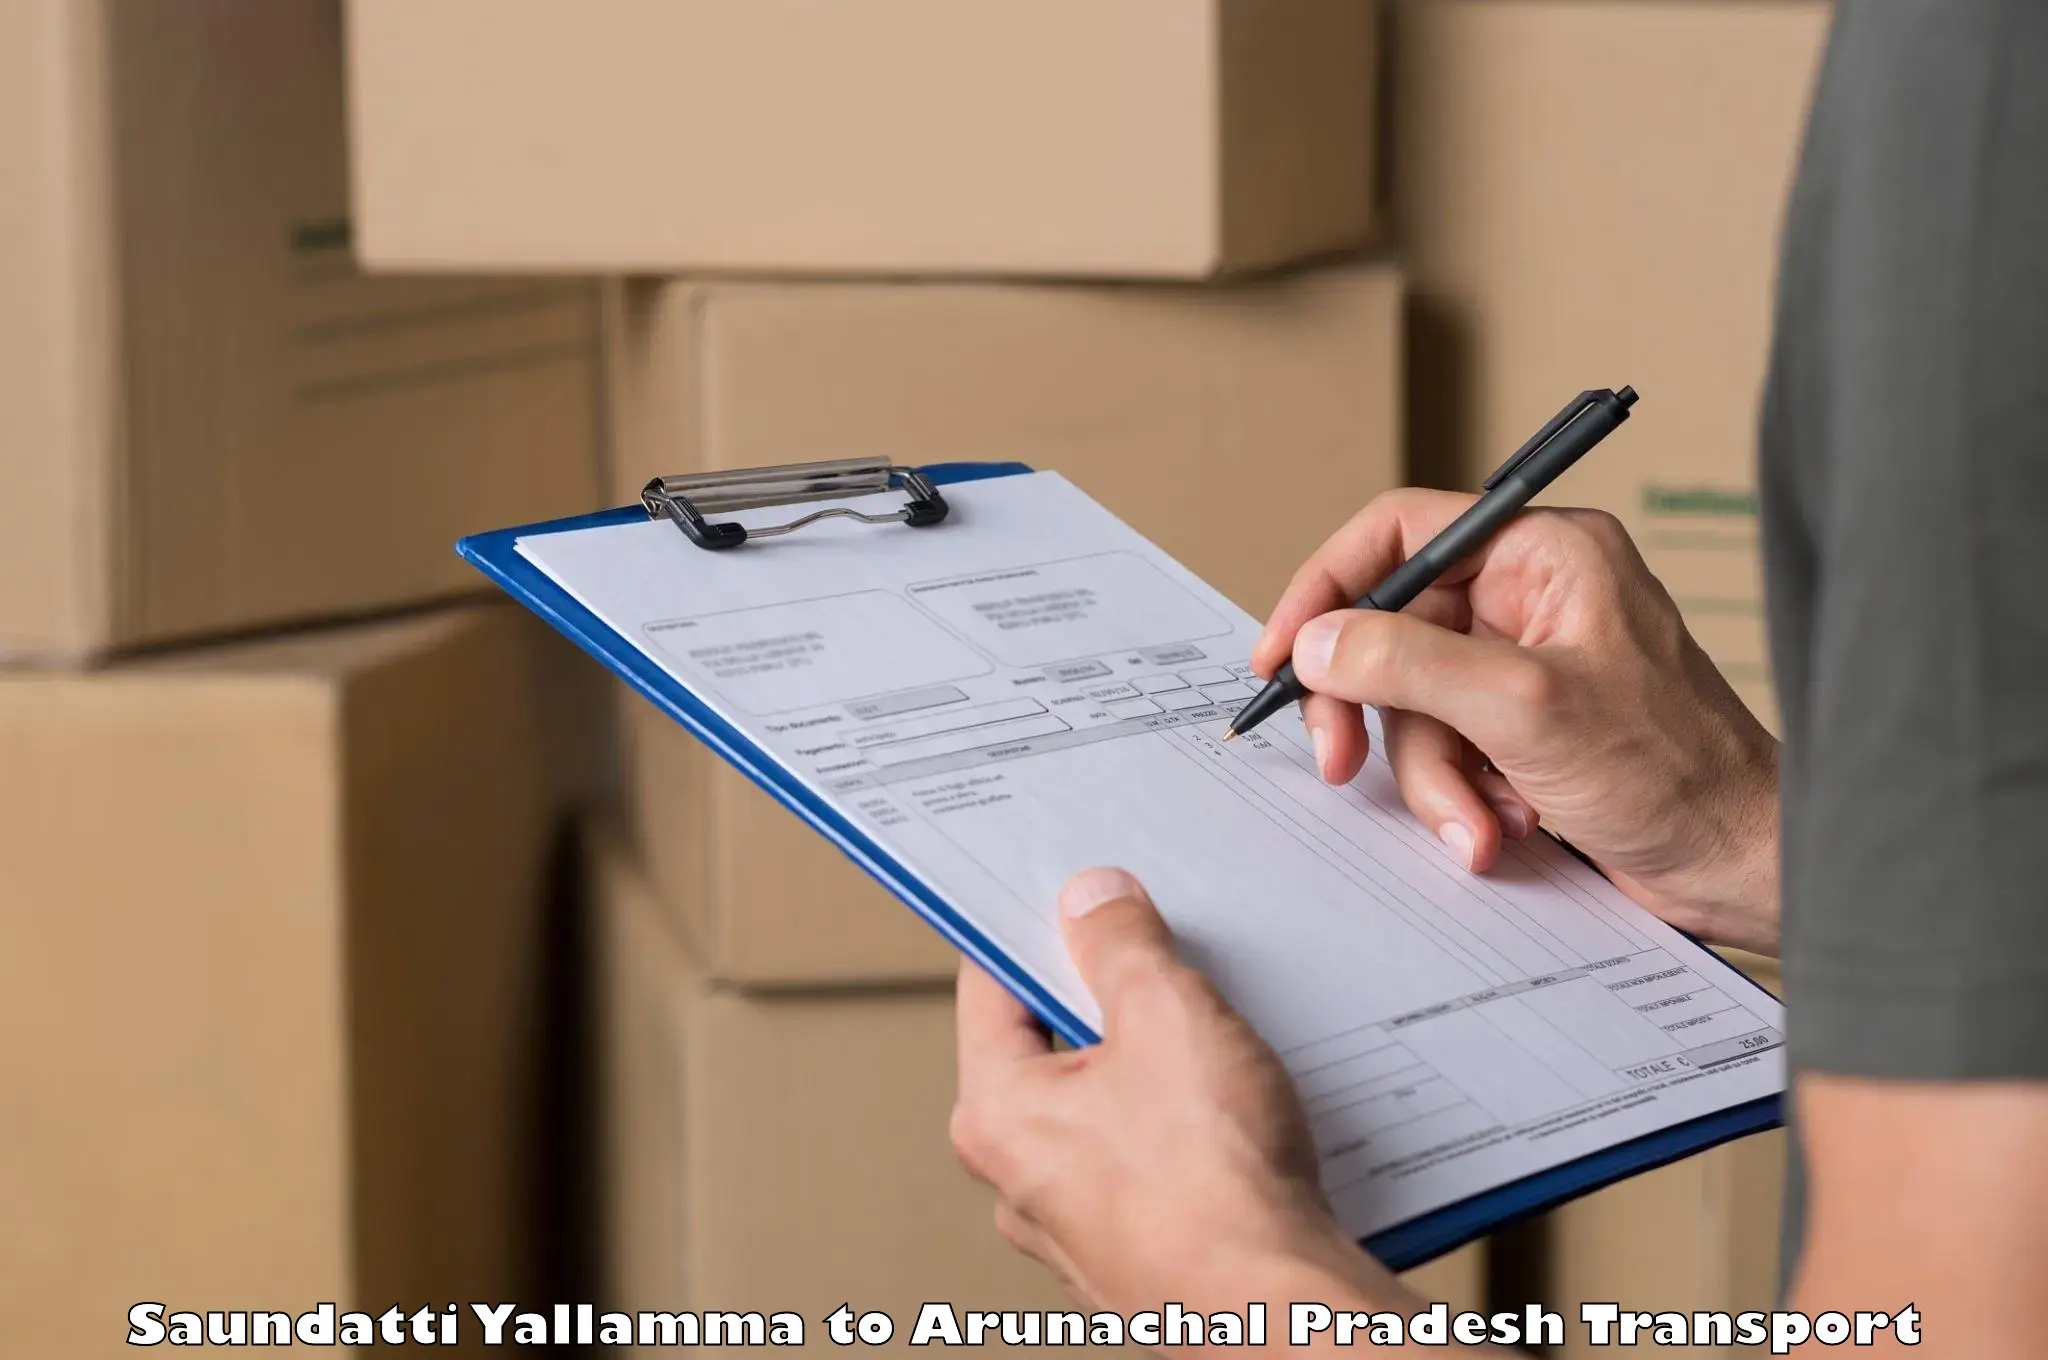 Cargo transport services in Saundatti Yallamma to Aalo